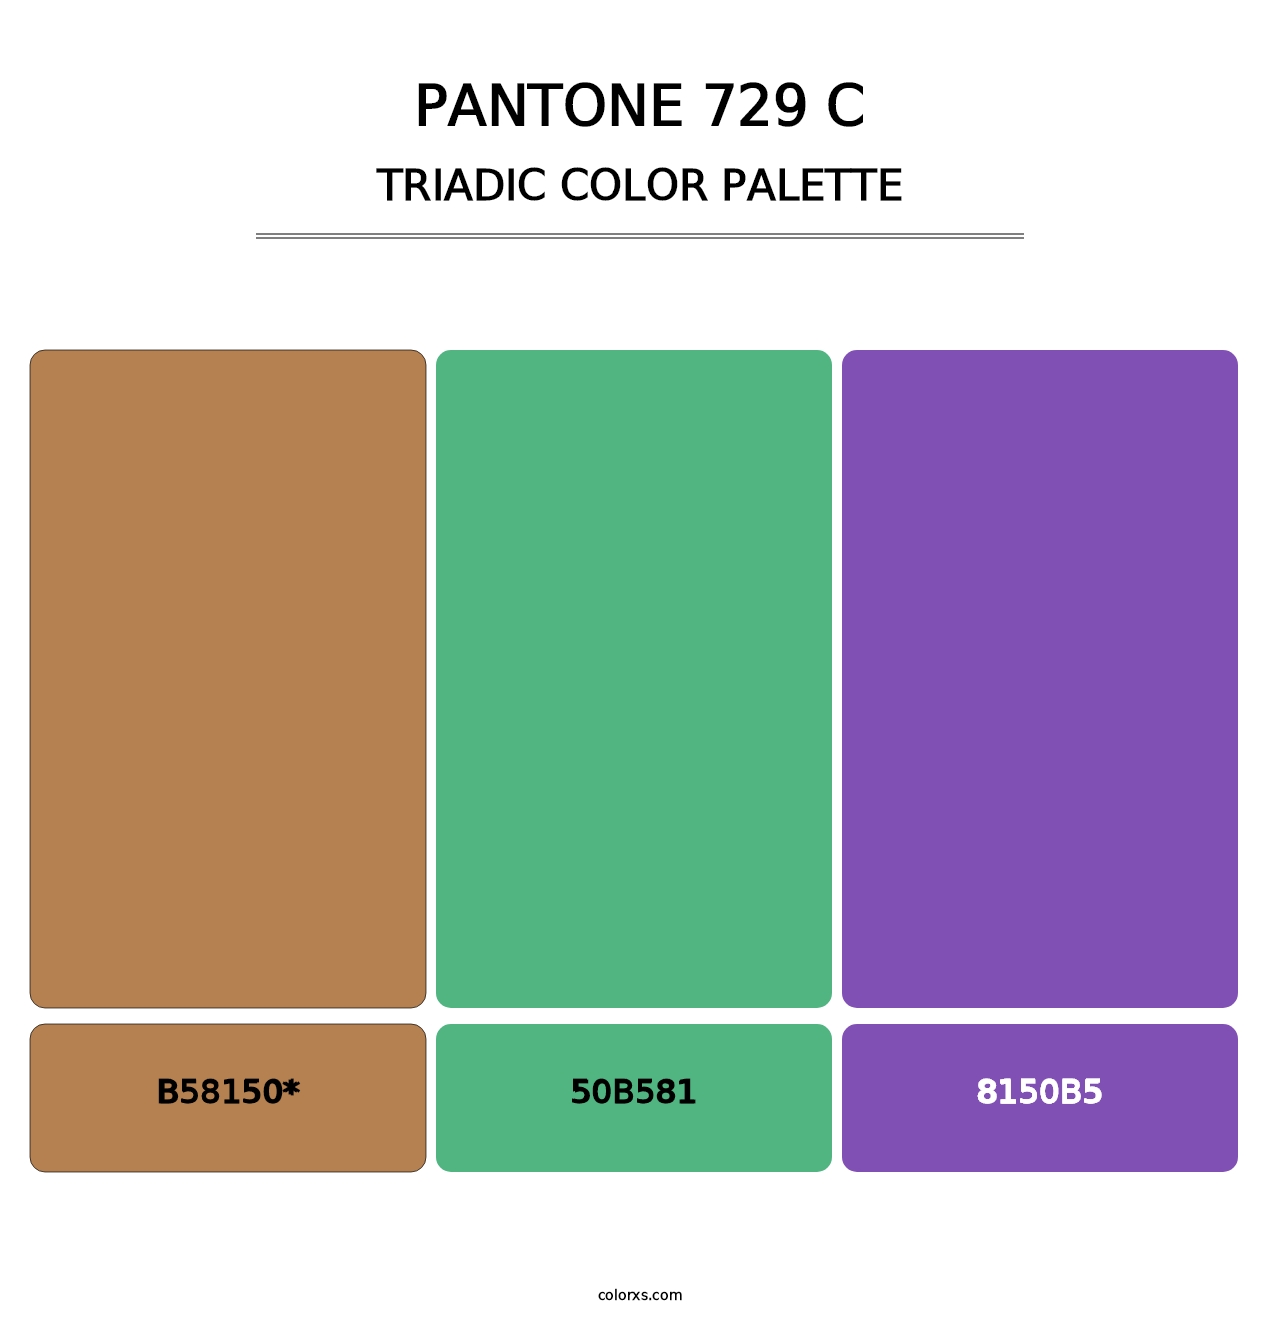 PANTONE 729 C - Triadic Color Palette